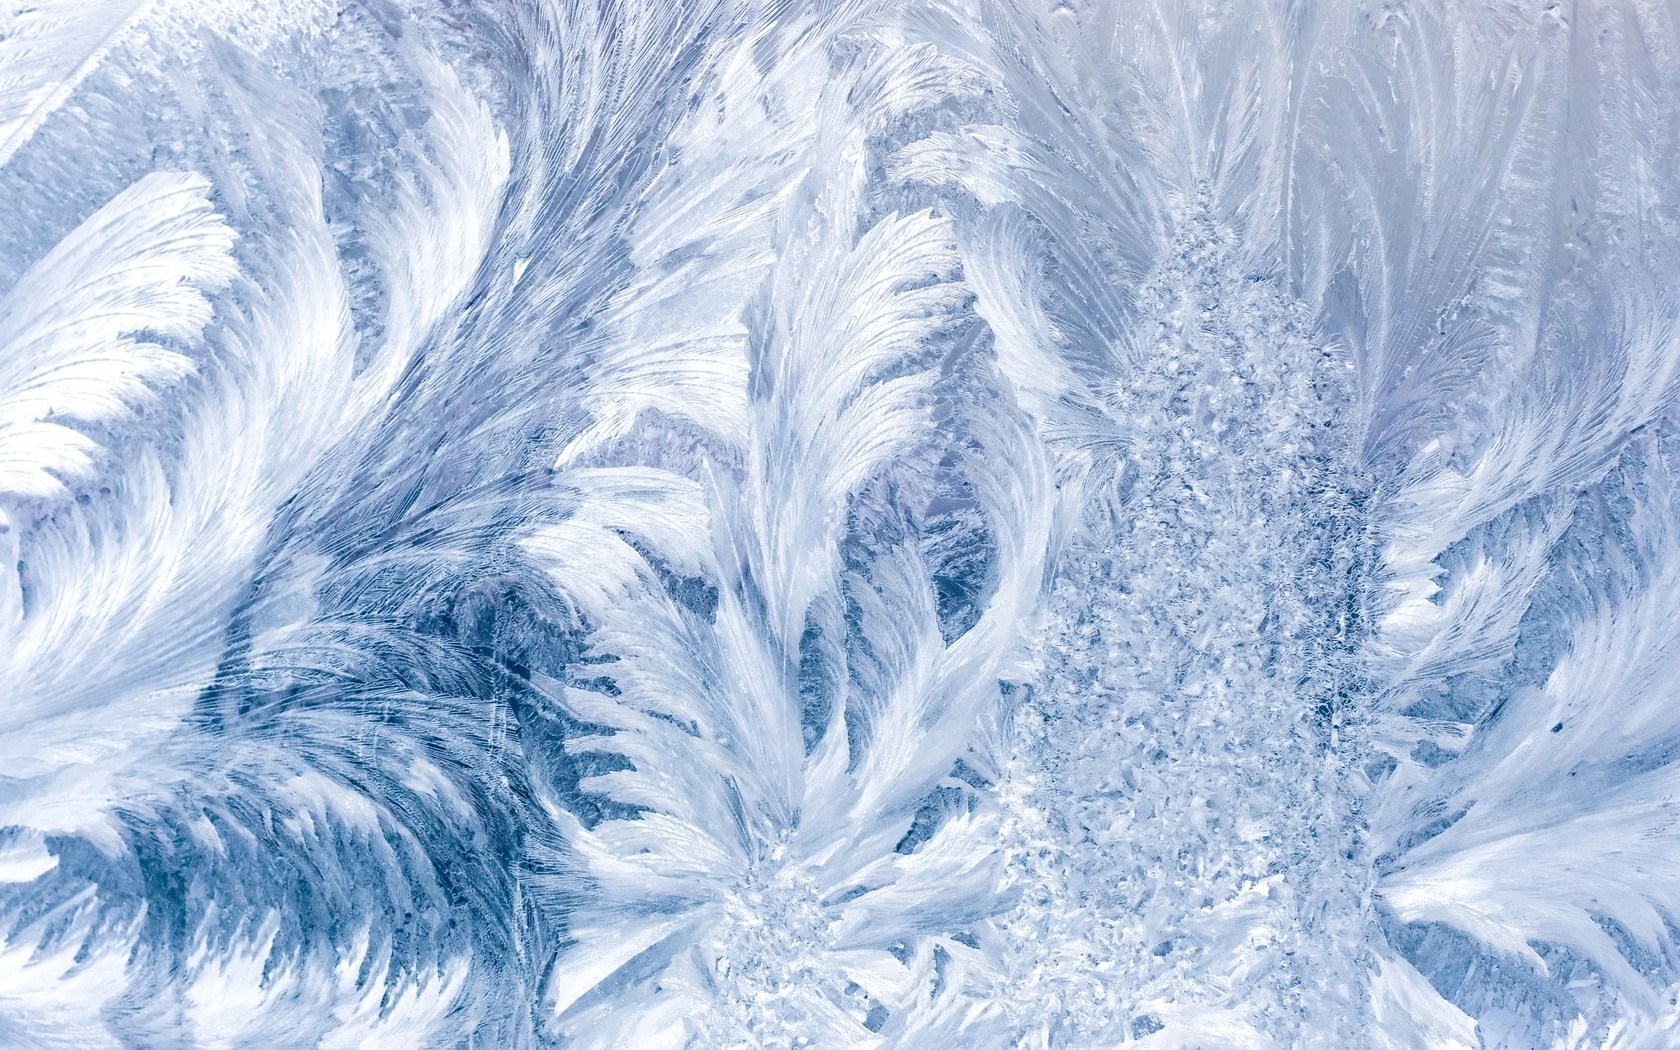 Текстура льда, лед, скачать фото, замороженная вода, download texture ice, snow, frozen water